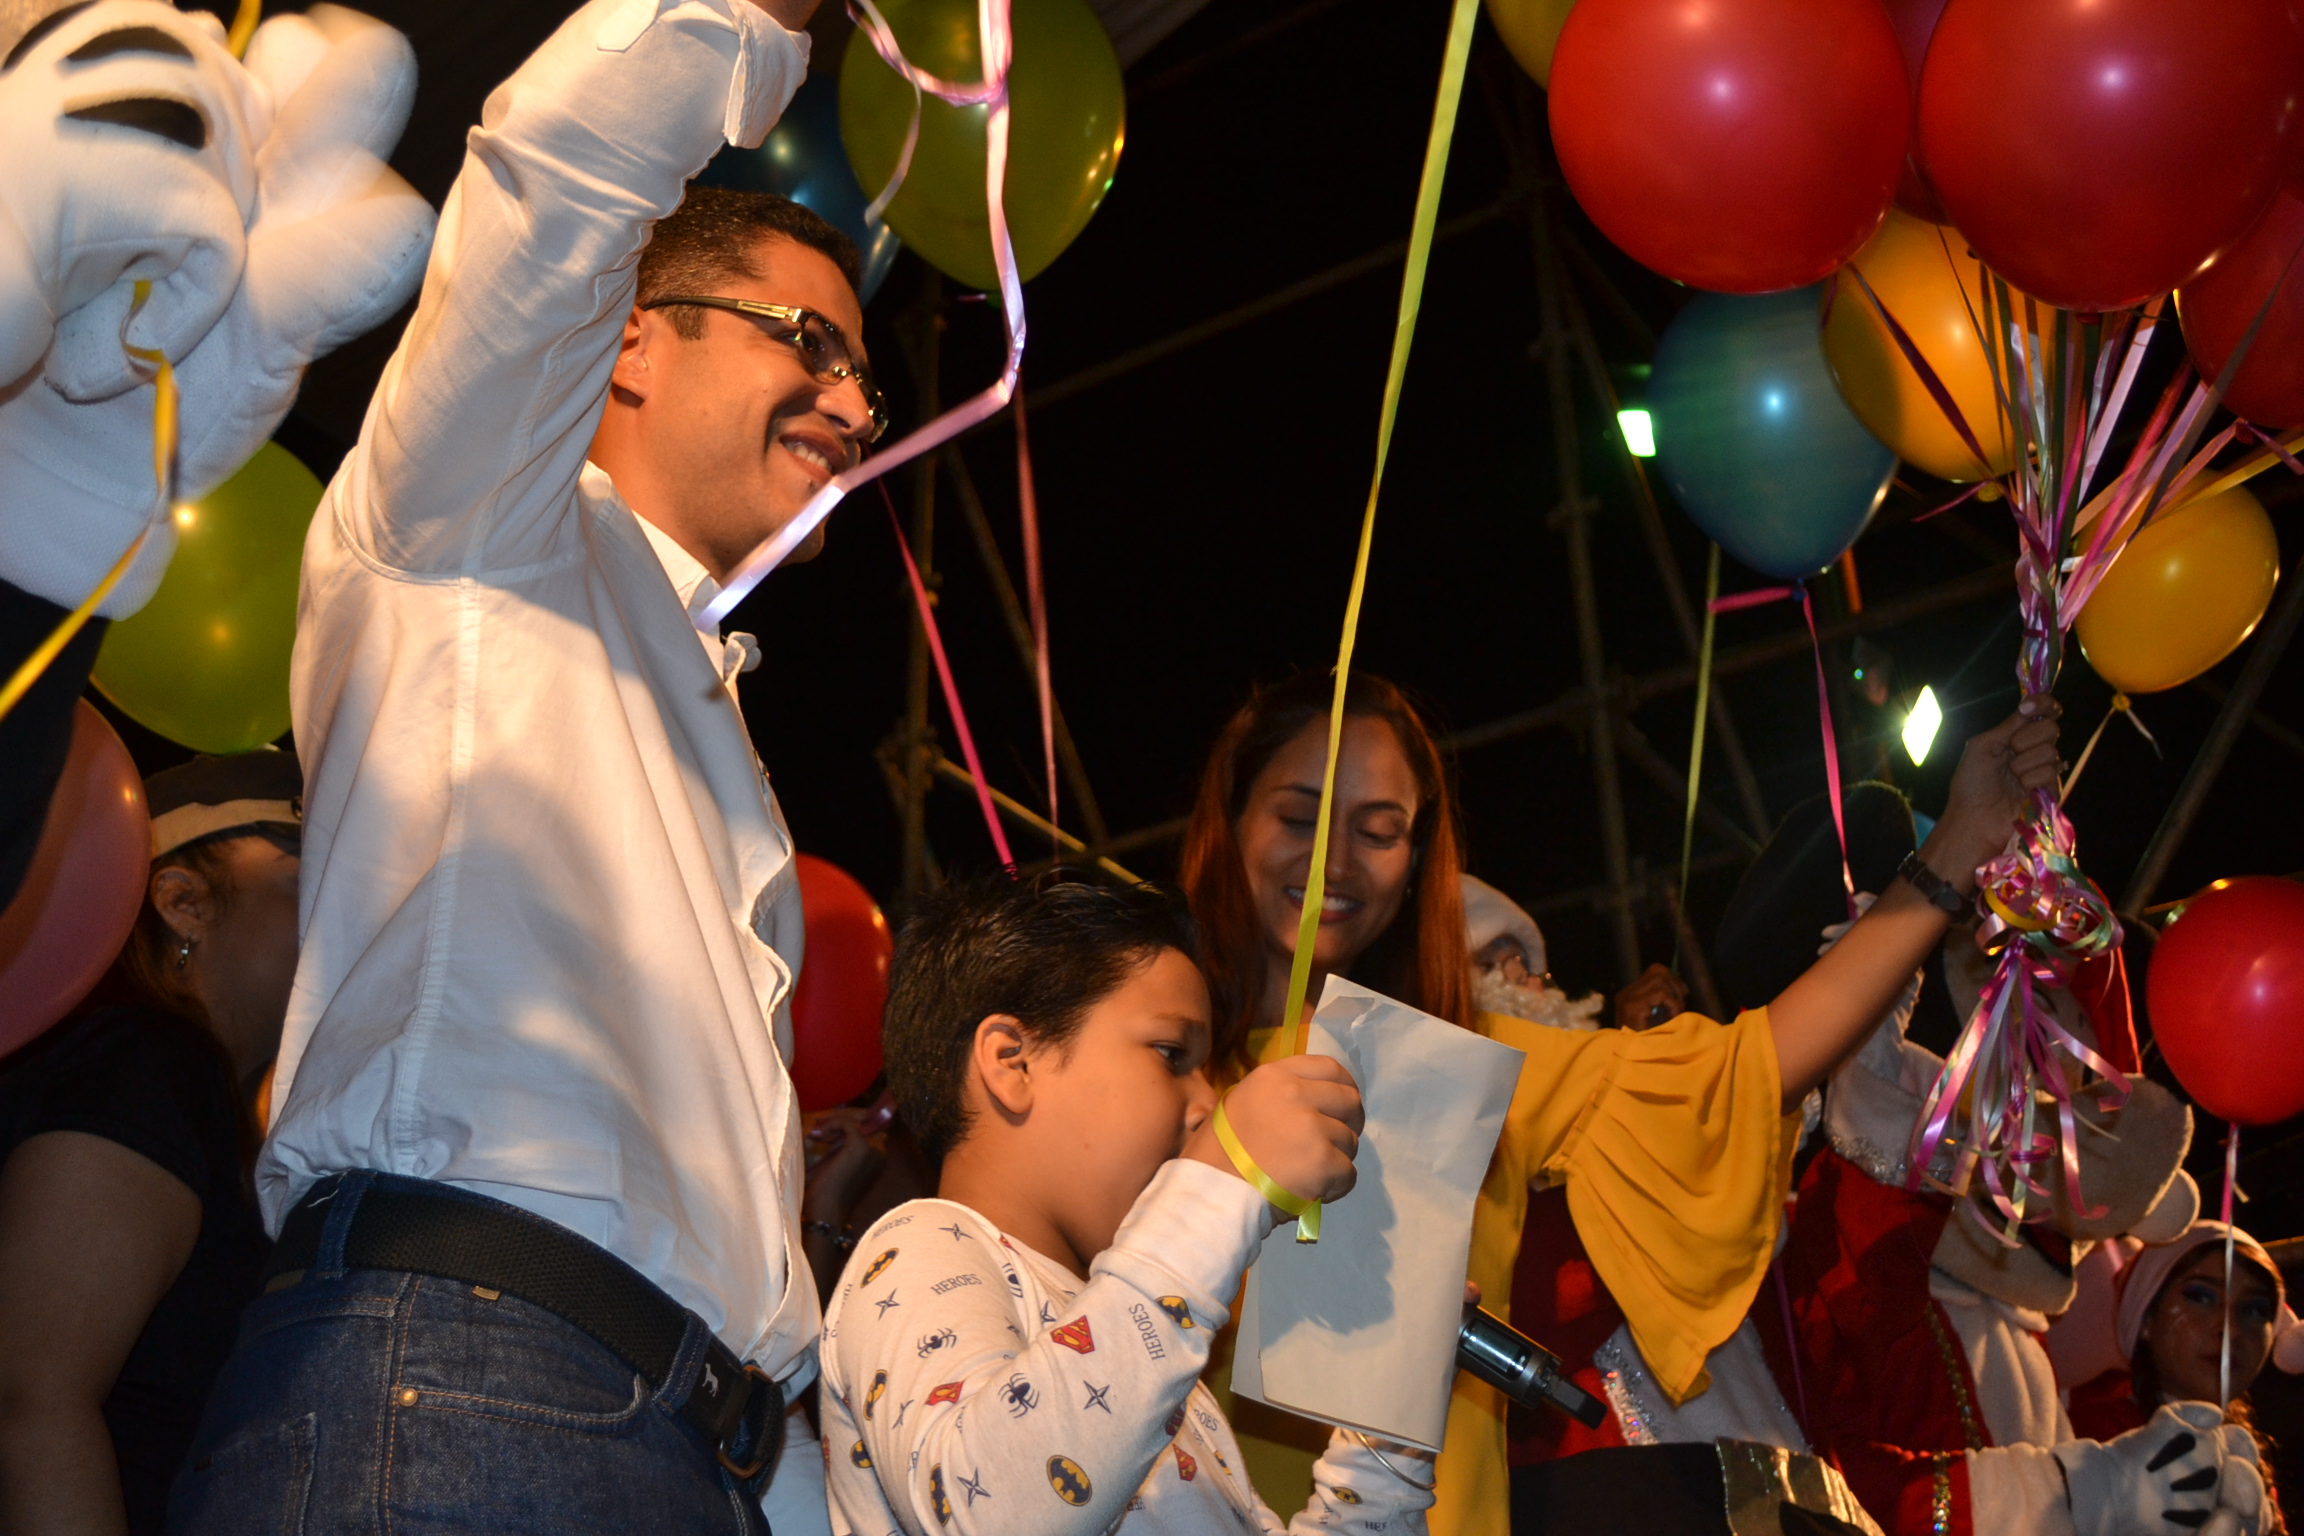 León Jurado: El próximo año veremos a las familias venezolanas nuevamente unidas